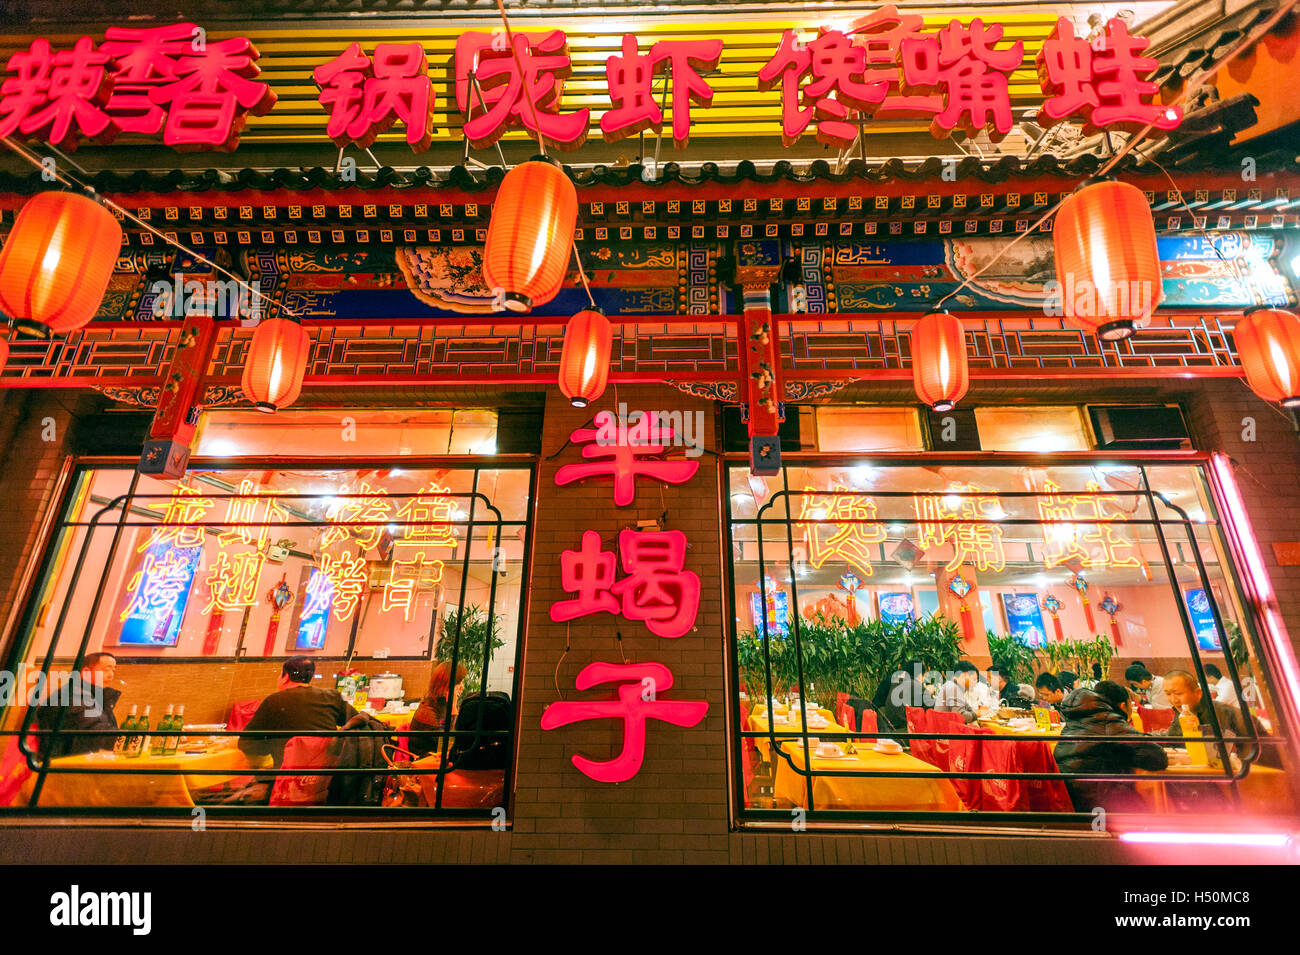 Vista nocturna del restaurante chino decorado con faroles rojos en Pekín, China Foto de stock